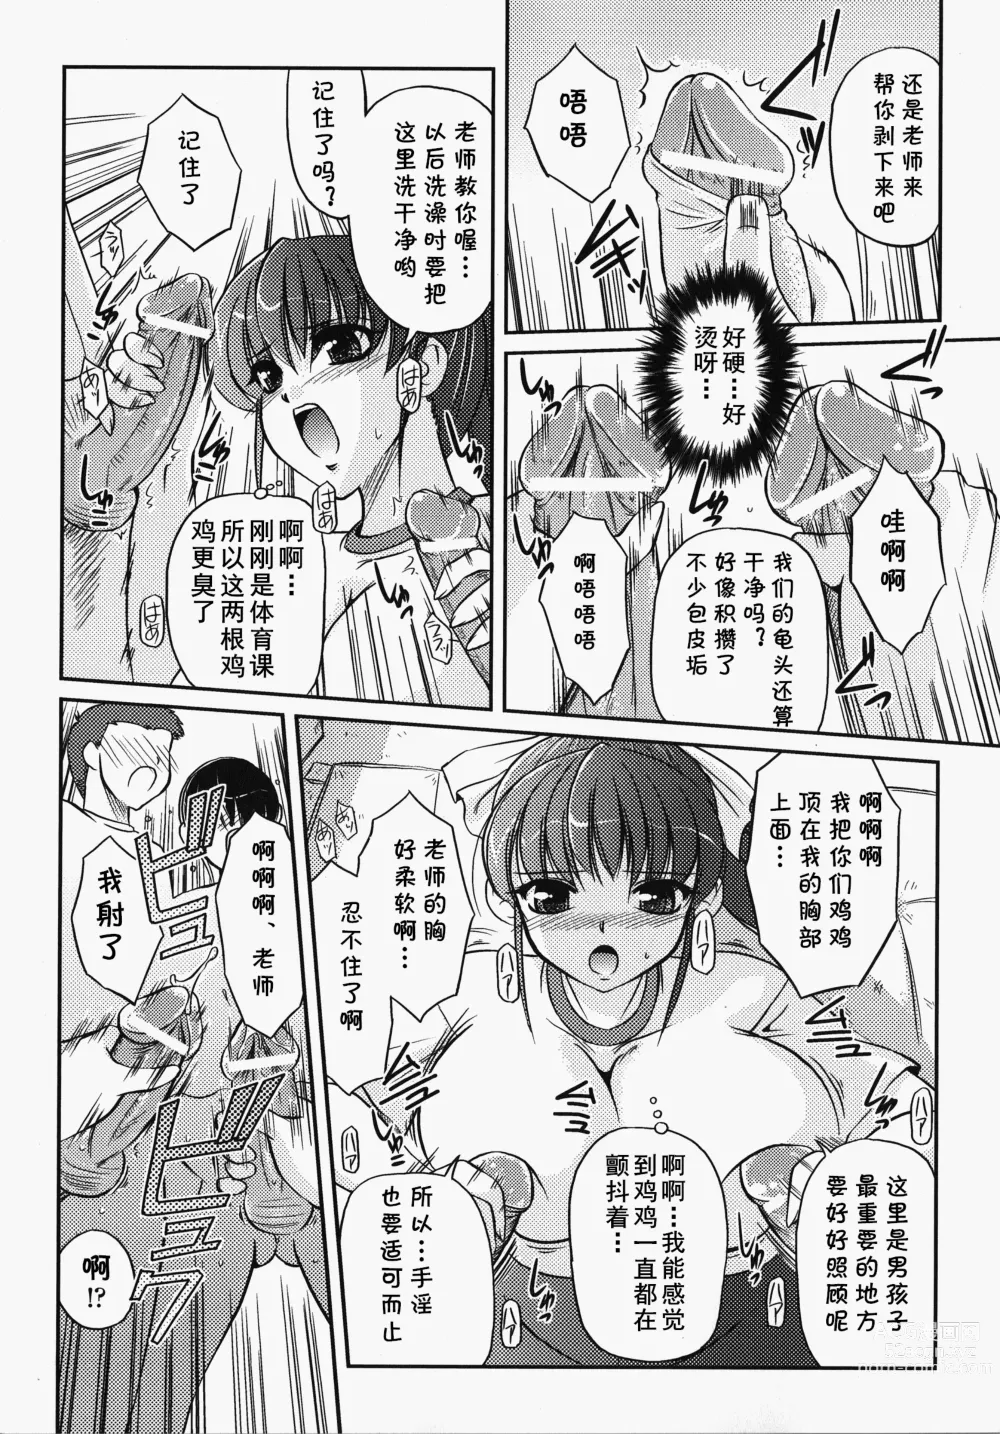 Page 5 of manga Bokura no Sensei  to  Himitsu  Jisshuu